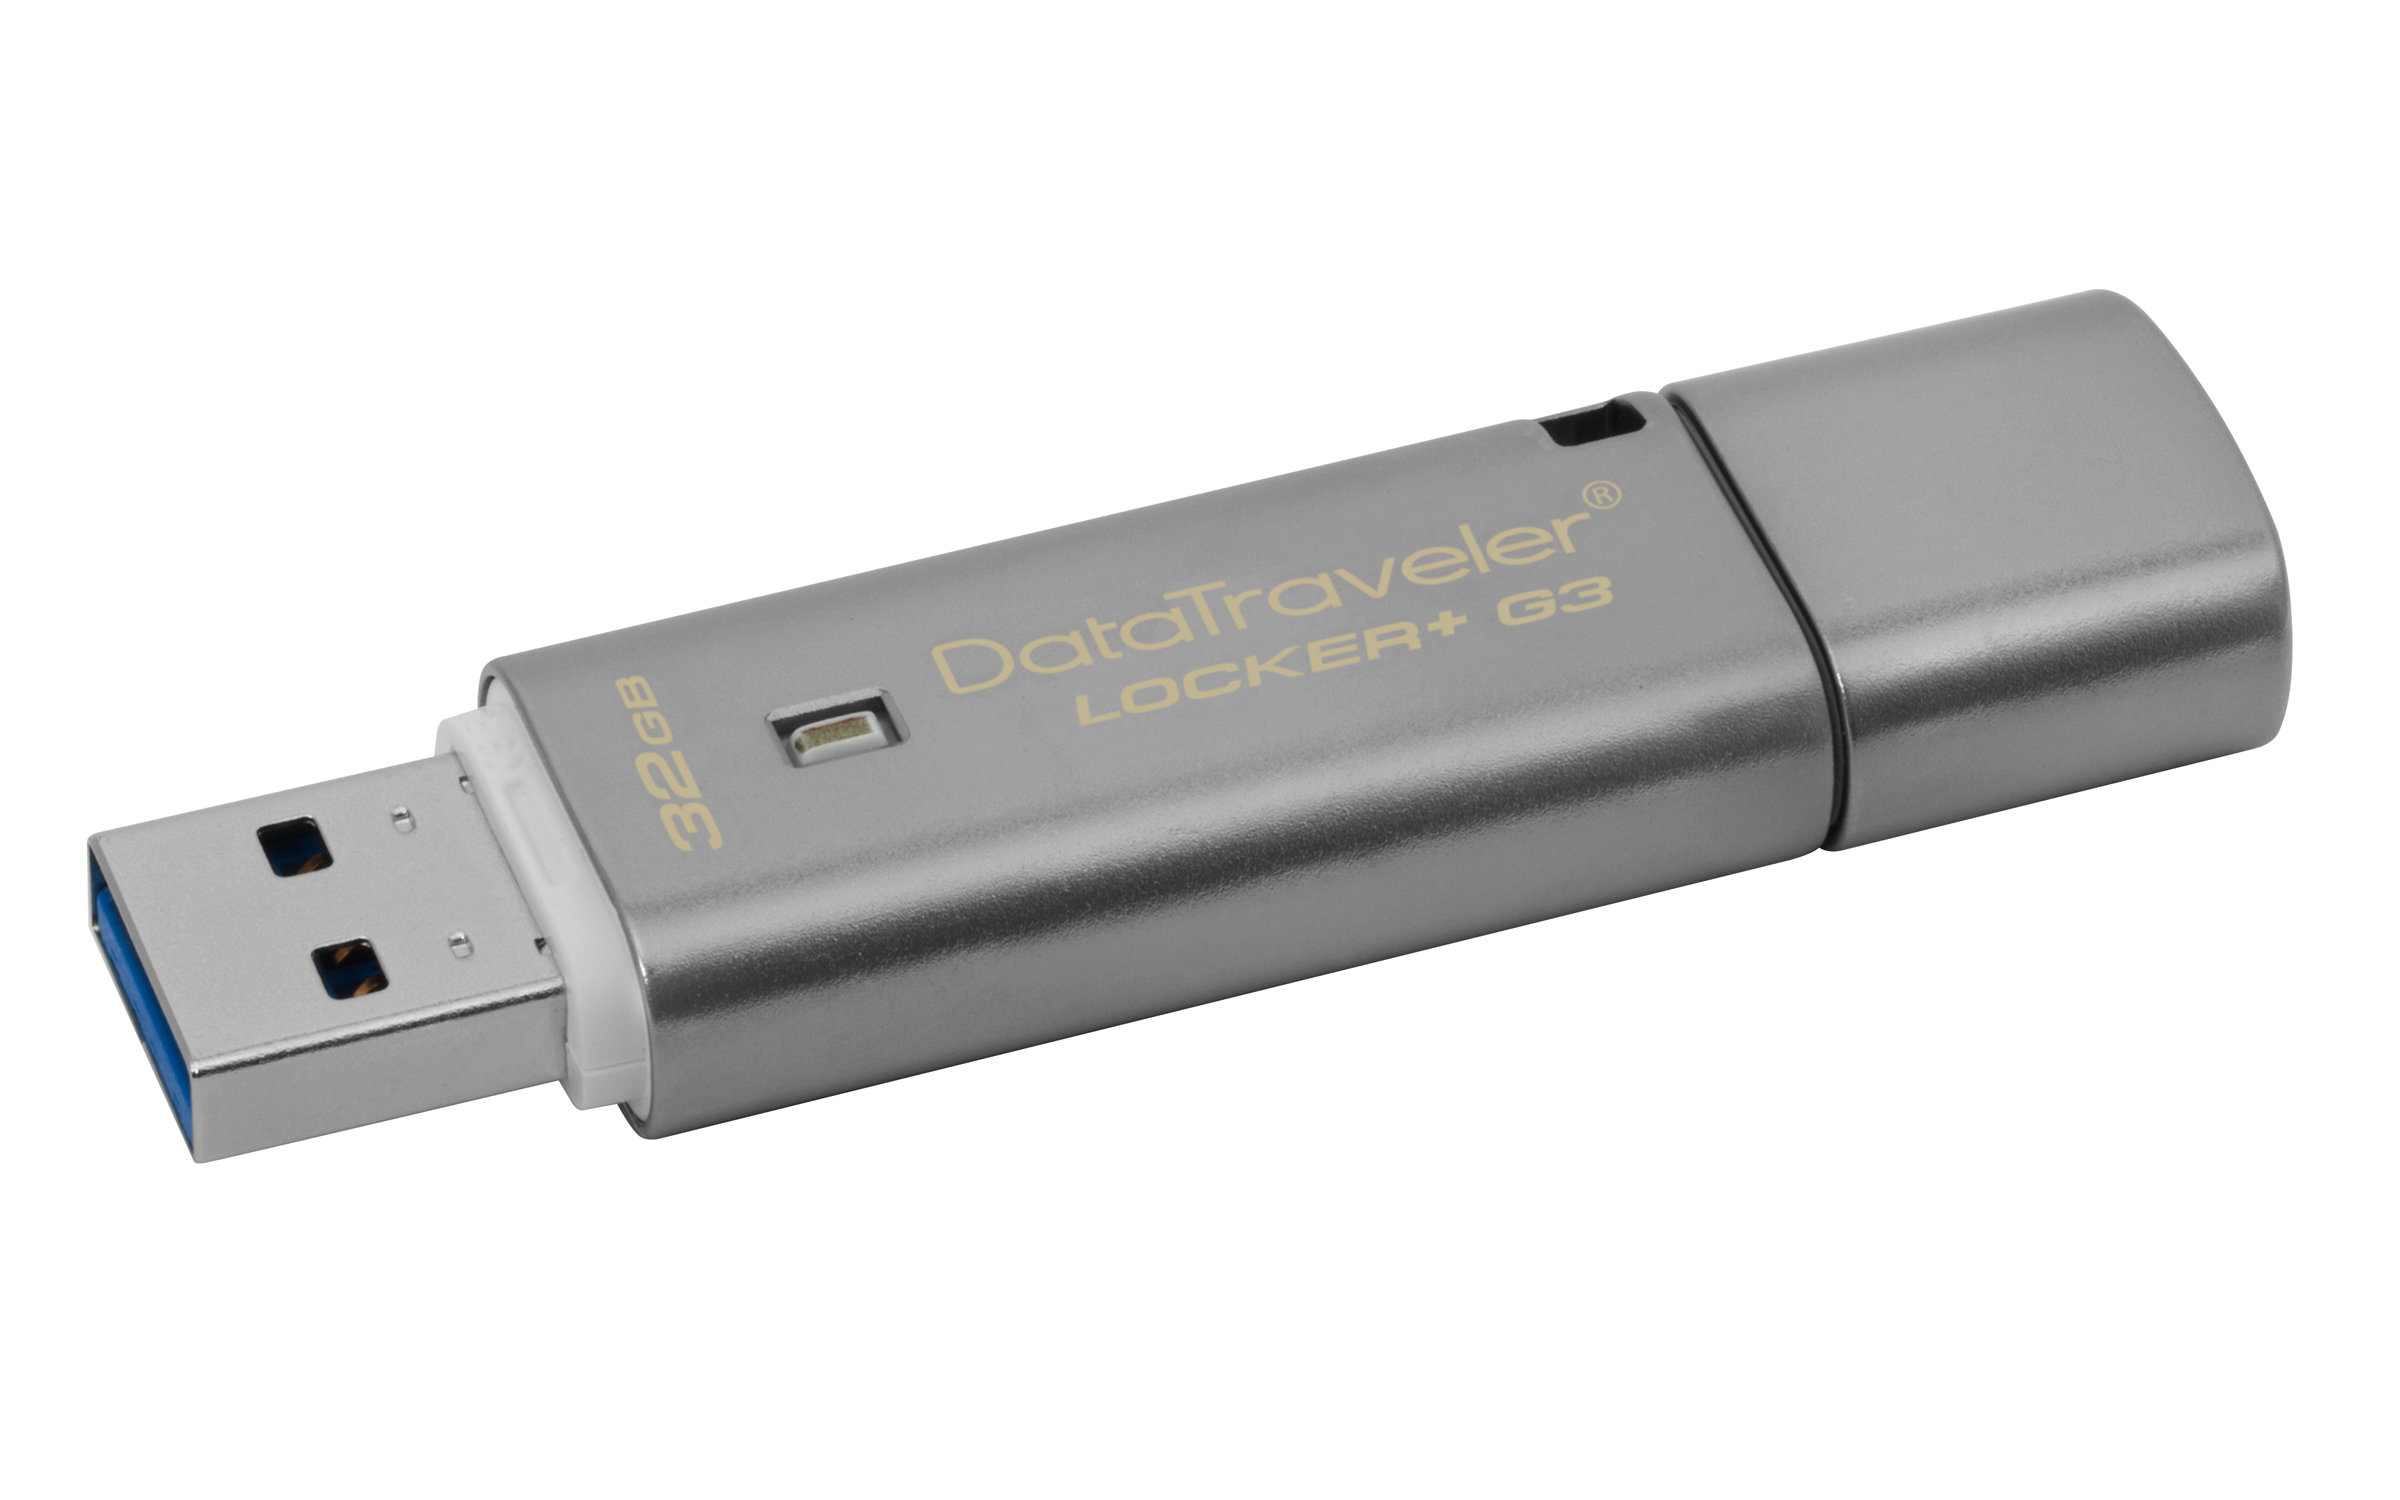 Silber KINGSTON USB-Stick, 894079 DTLPG3 Traveler GB, Data Locker 32